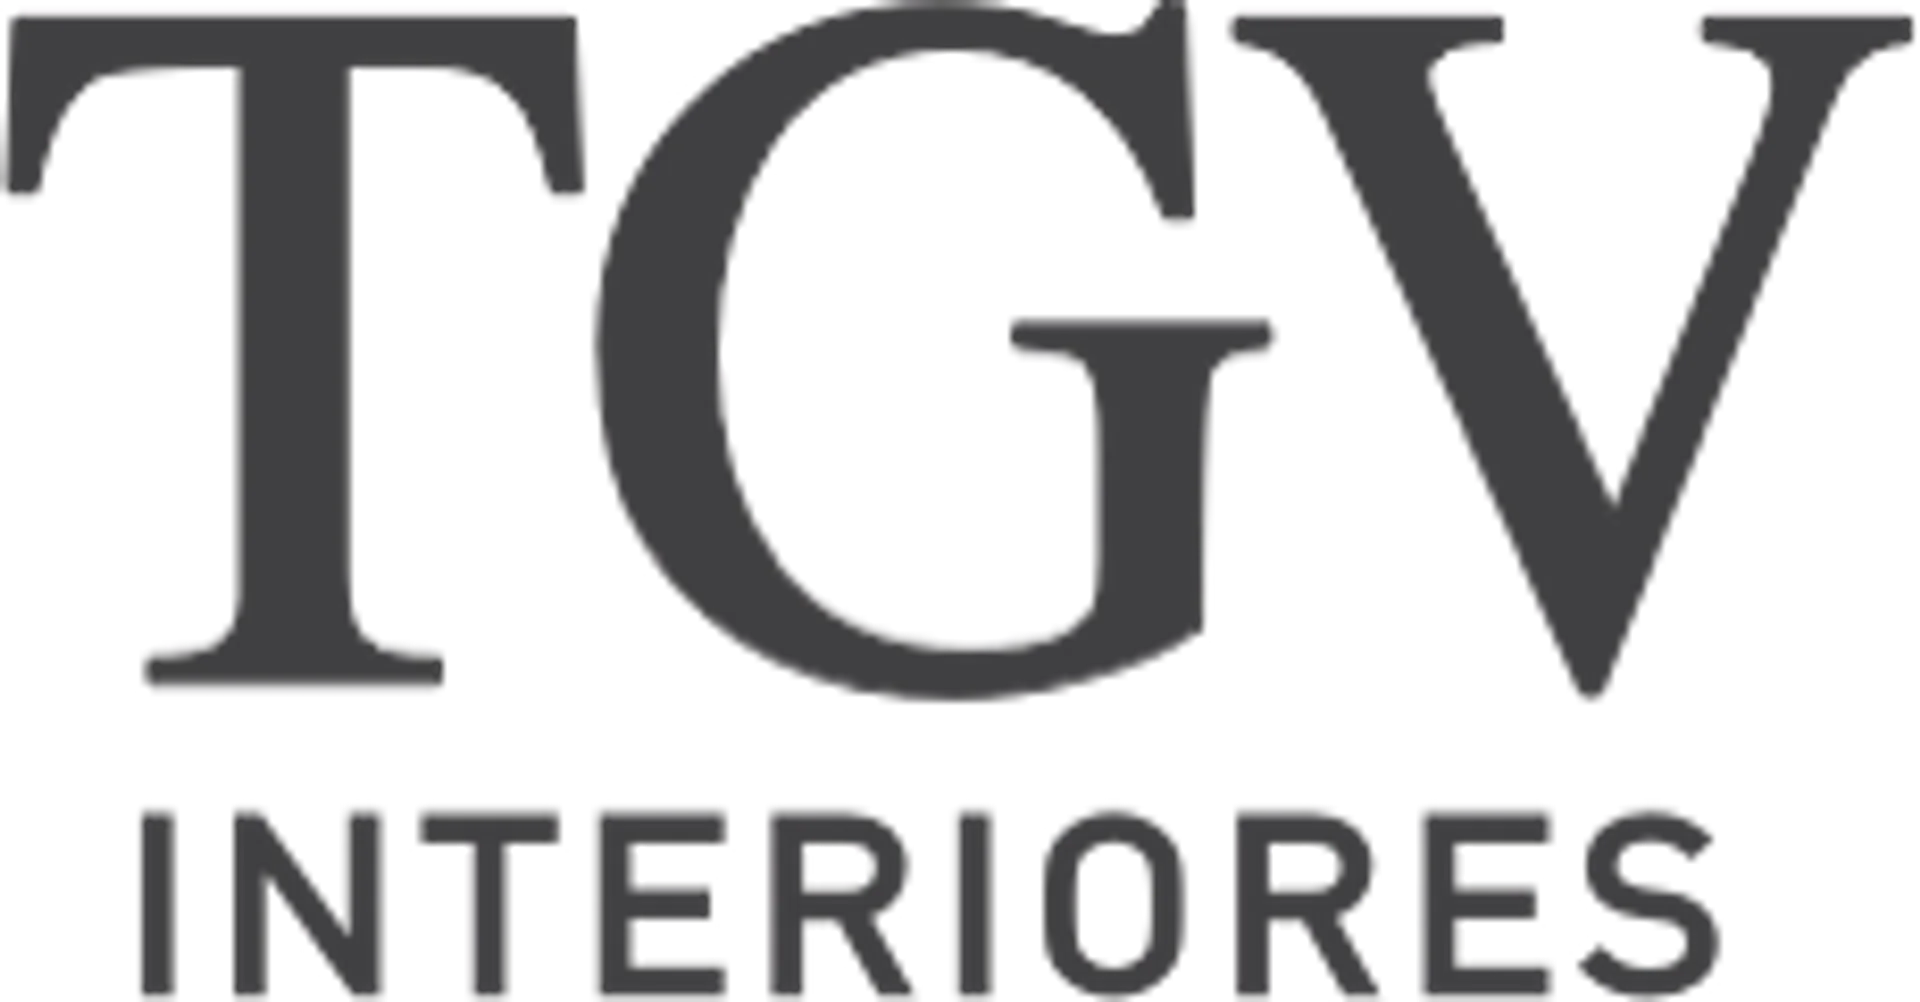 TGV INTERIORES logo de folhetos